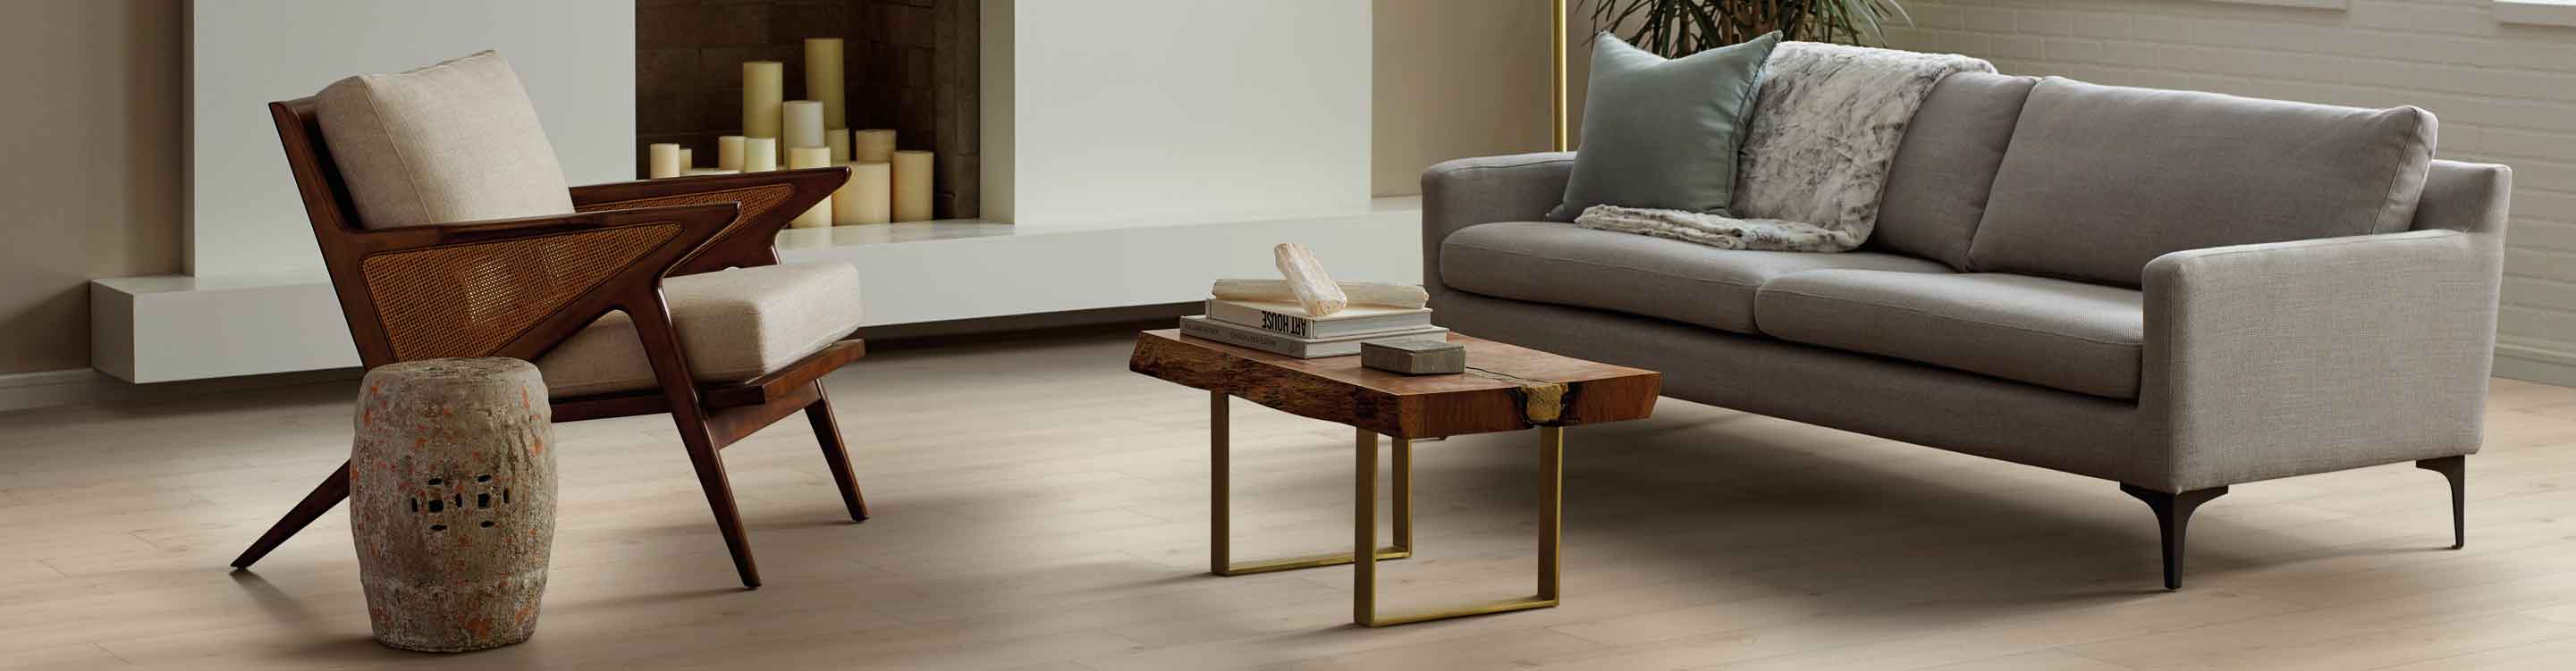 Luxury Vinyl floors in neutral living room